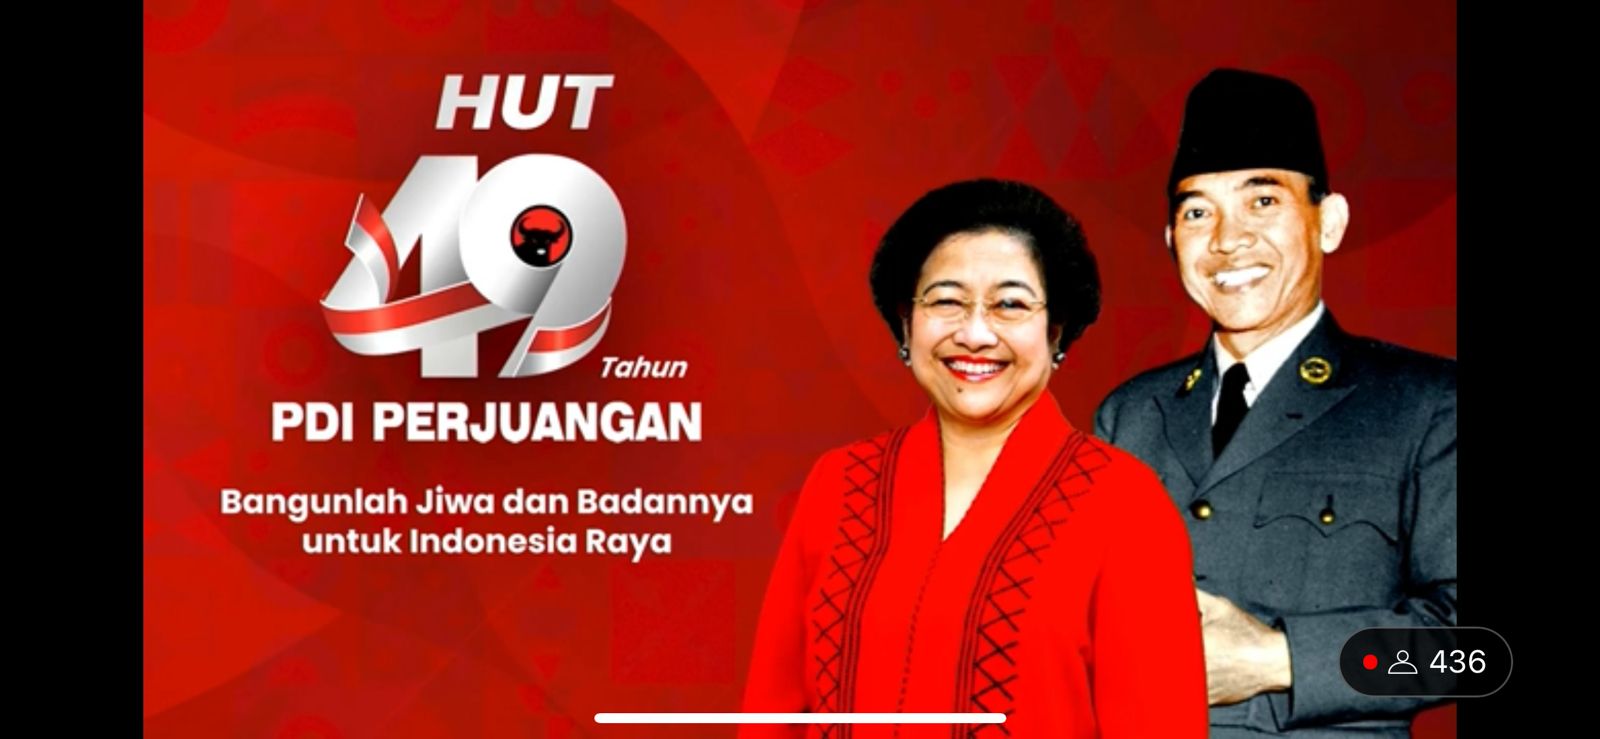 Megawati minta kasus pelanggaran HAM di Indonesia diselesaikan